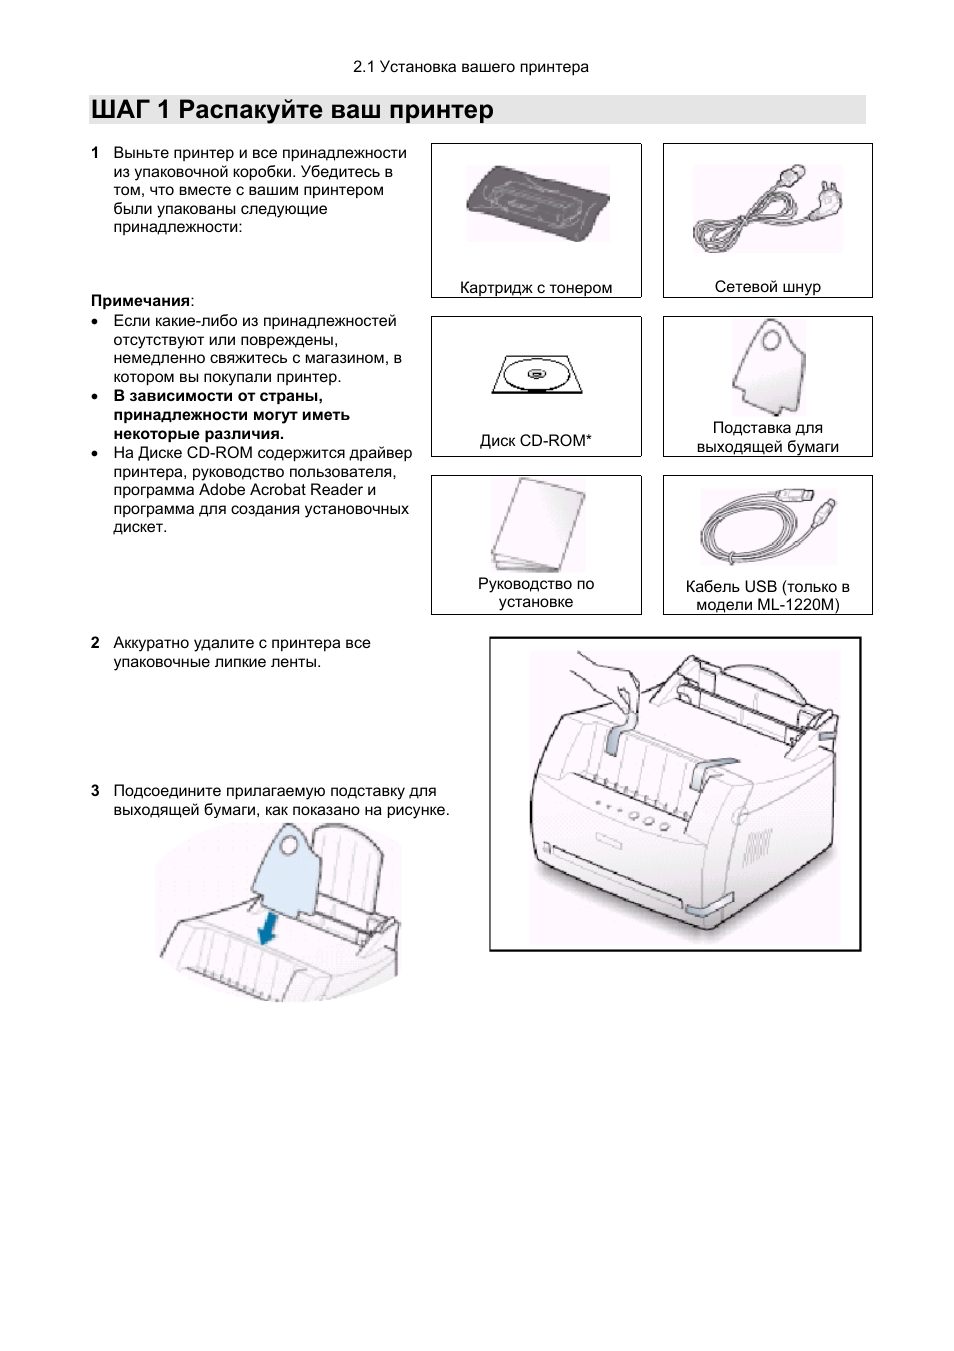 Инструкция По Эксплуатации Принтера Samsung Ml 191